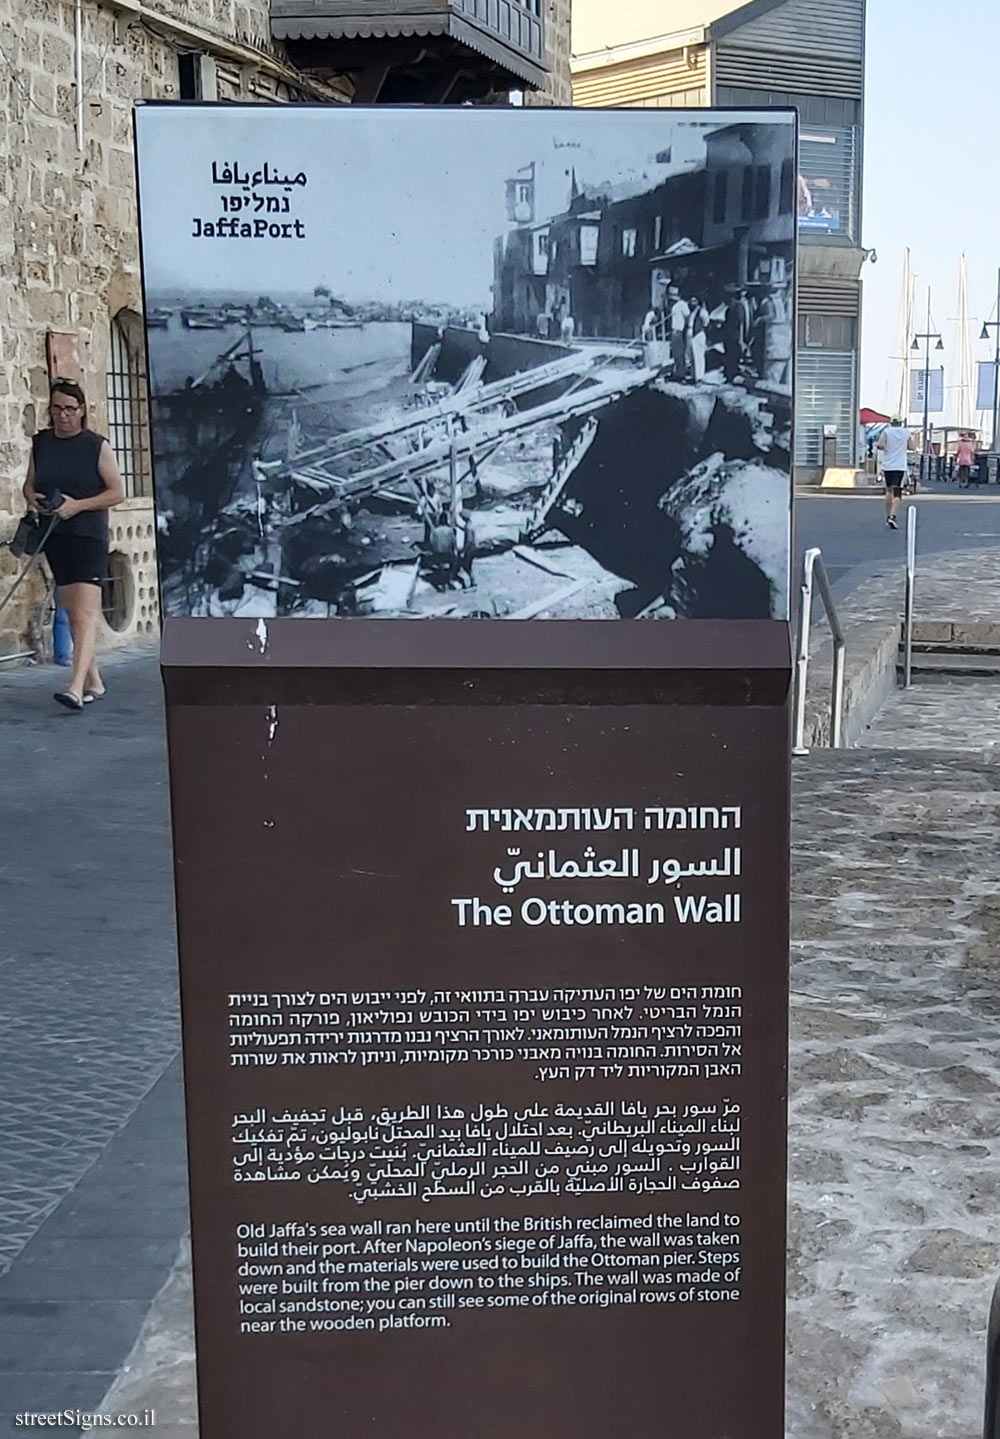 Tel Aviv - Jaffa Port - The Ottoman Wall